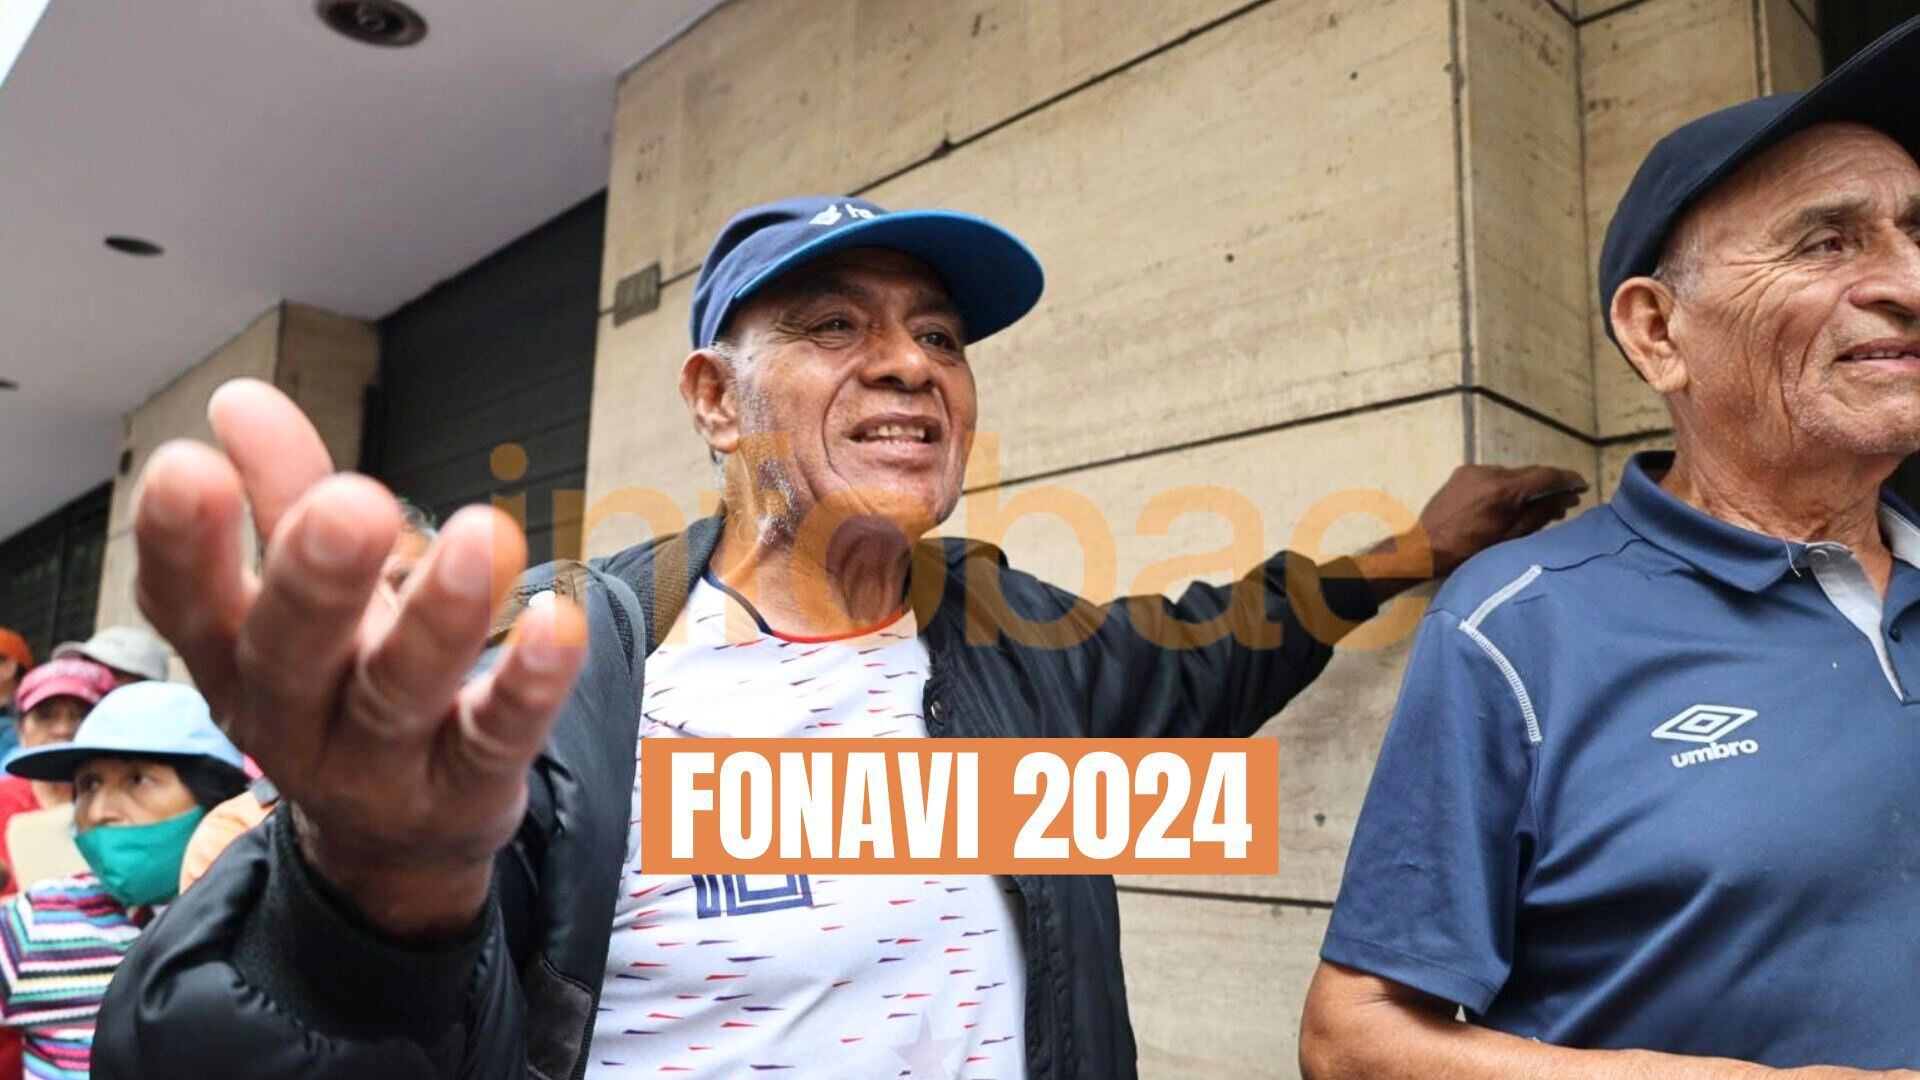 Fonavista adulto mayor esperando con la mano abierta en Centro de Lima con logo de Infobae y Fonavi 2024